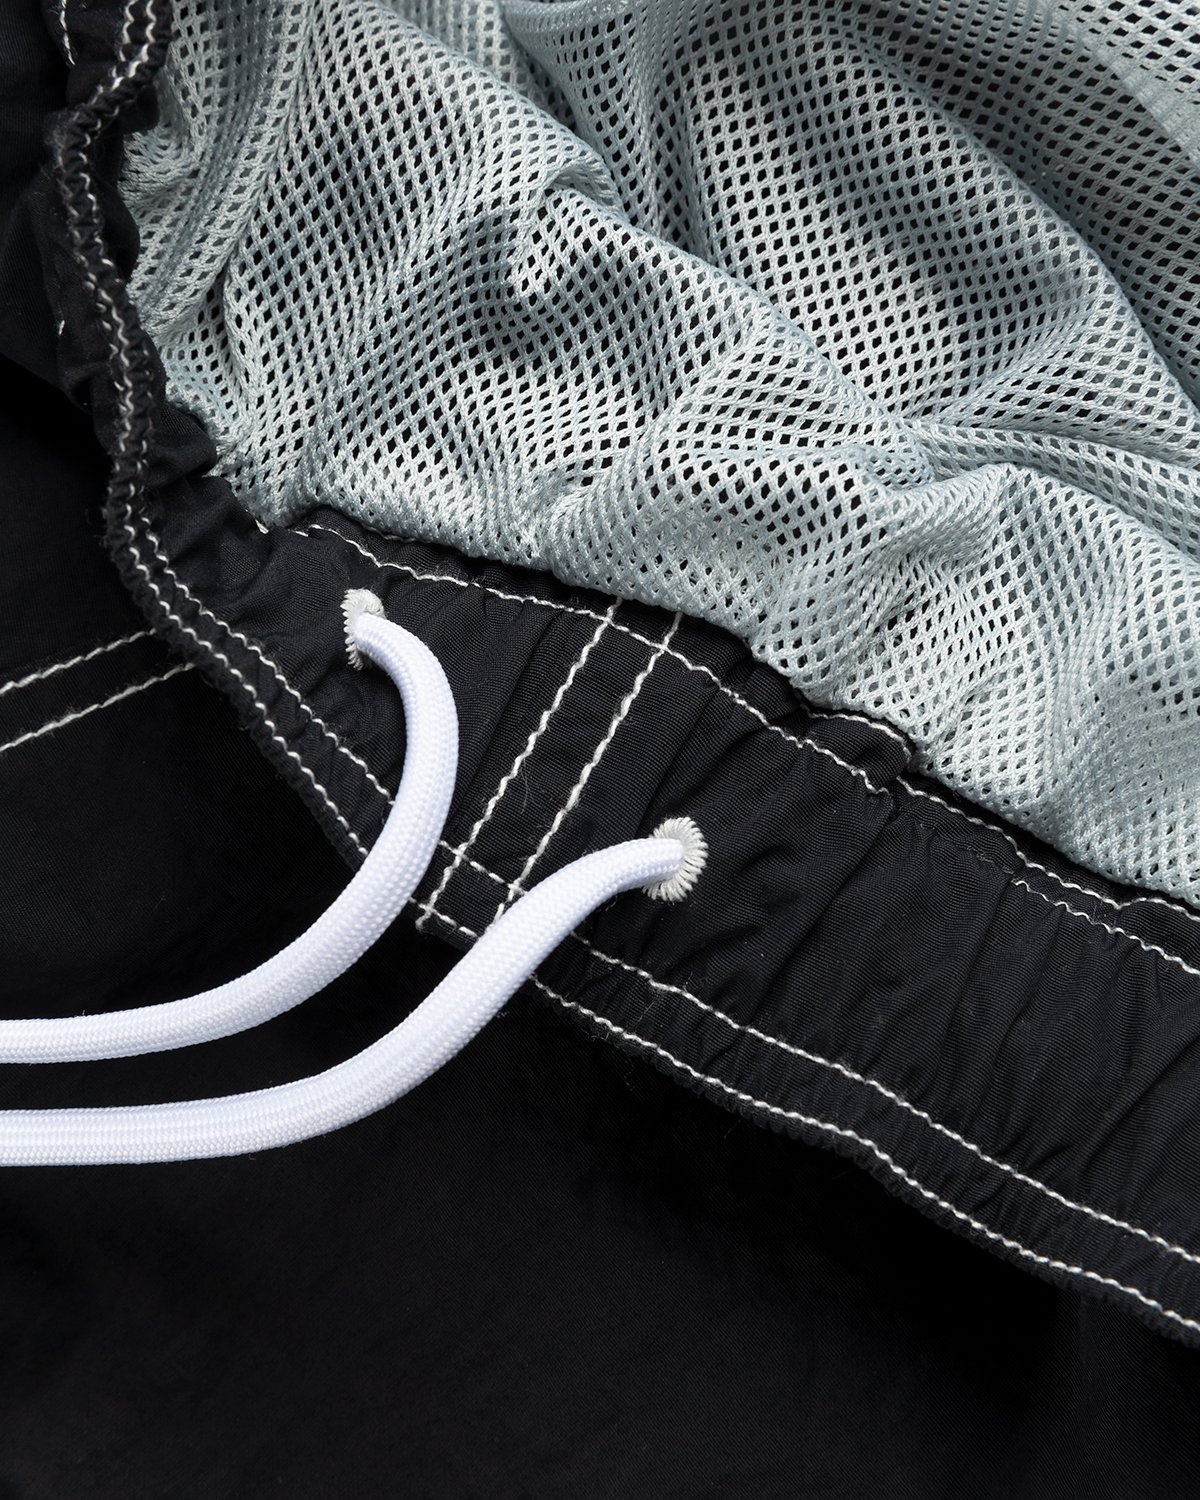 Highsnobiety – Contrast Brushed Nylon Water Shorts Black - Shorts - Black - Image 6